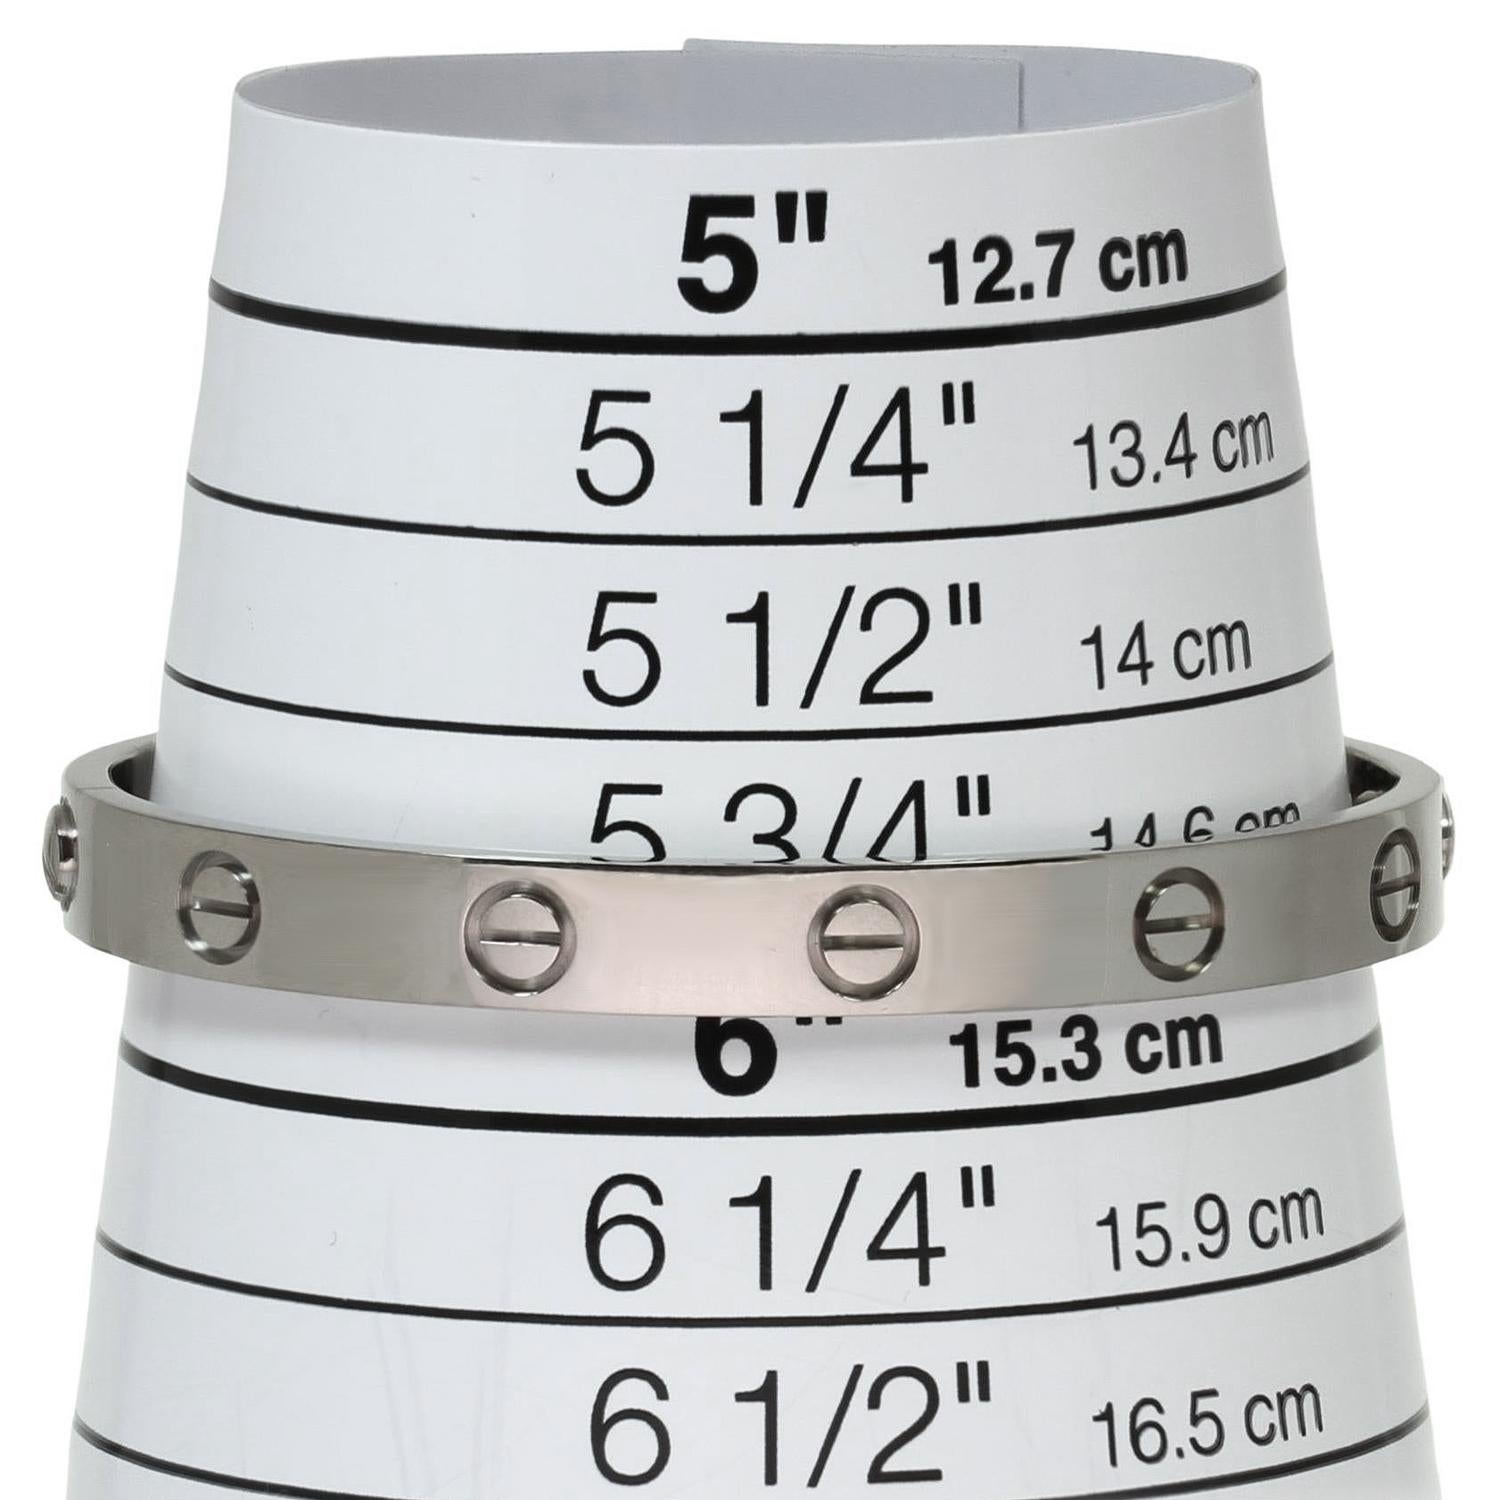 cartier bracelet sizes